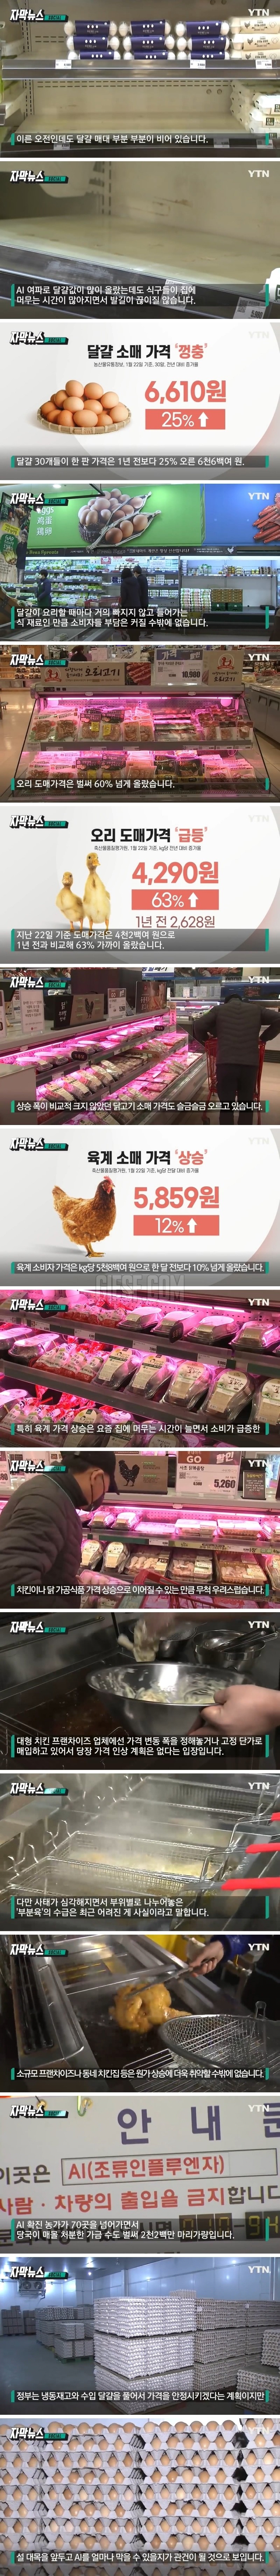 걱정되는 닭고기 상황에.치킨 가격 어쩌나.jpg